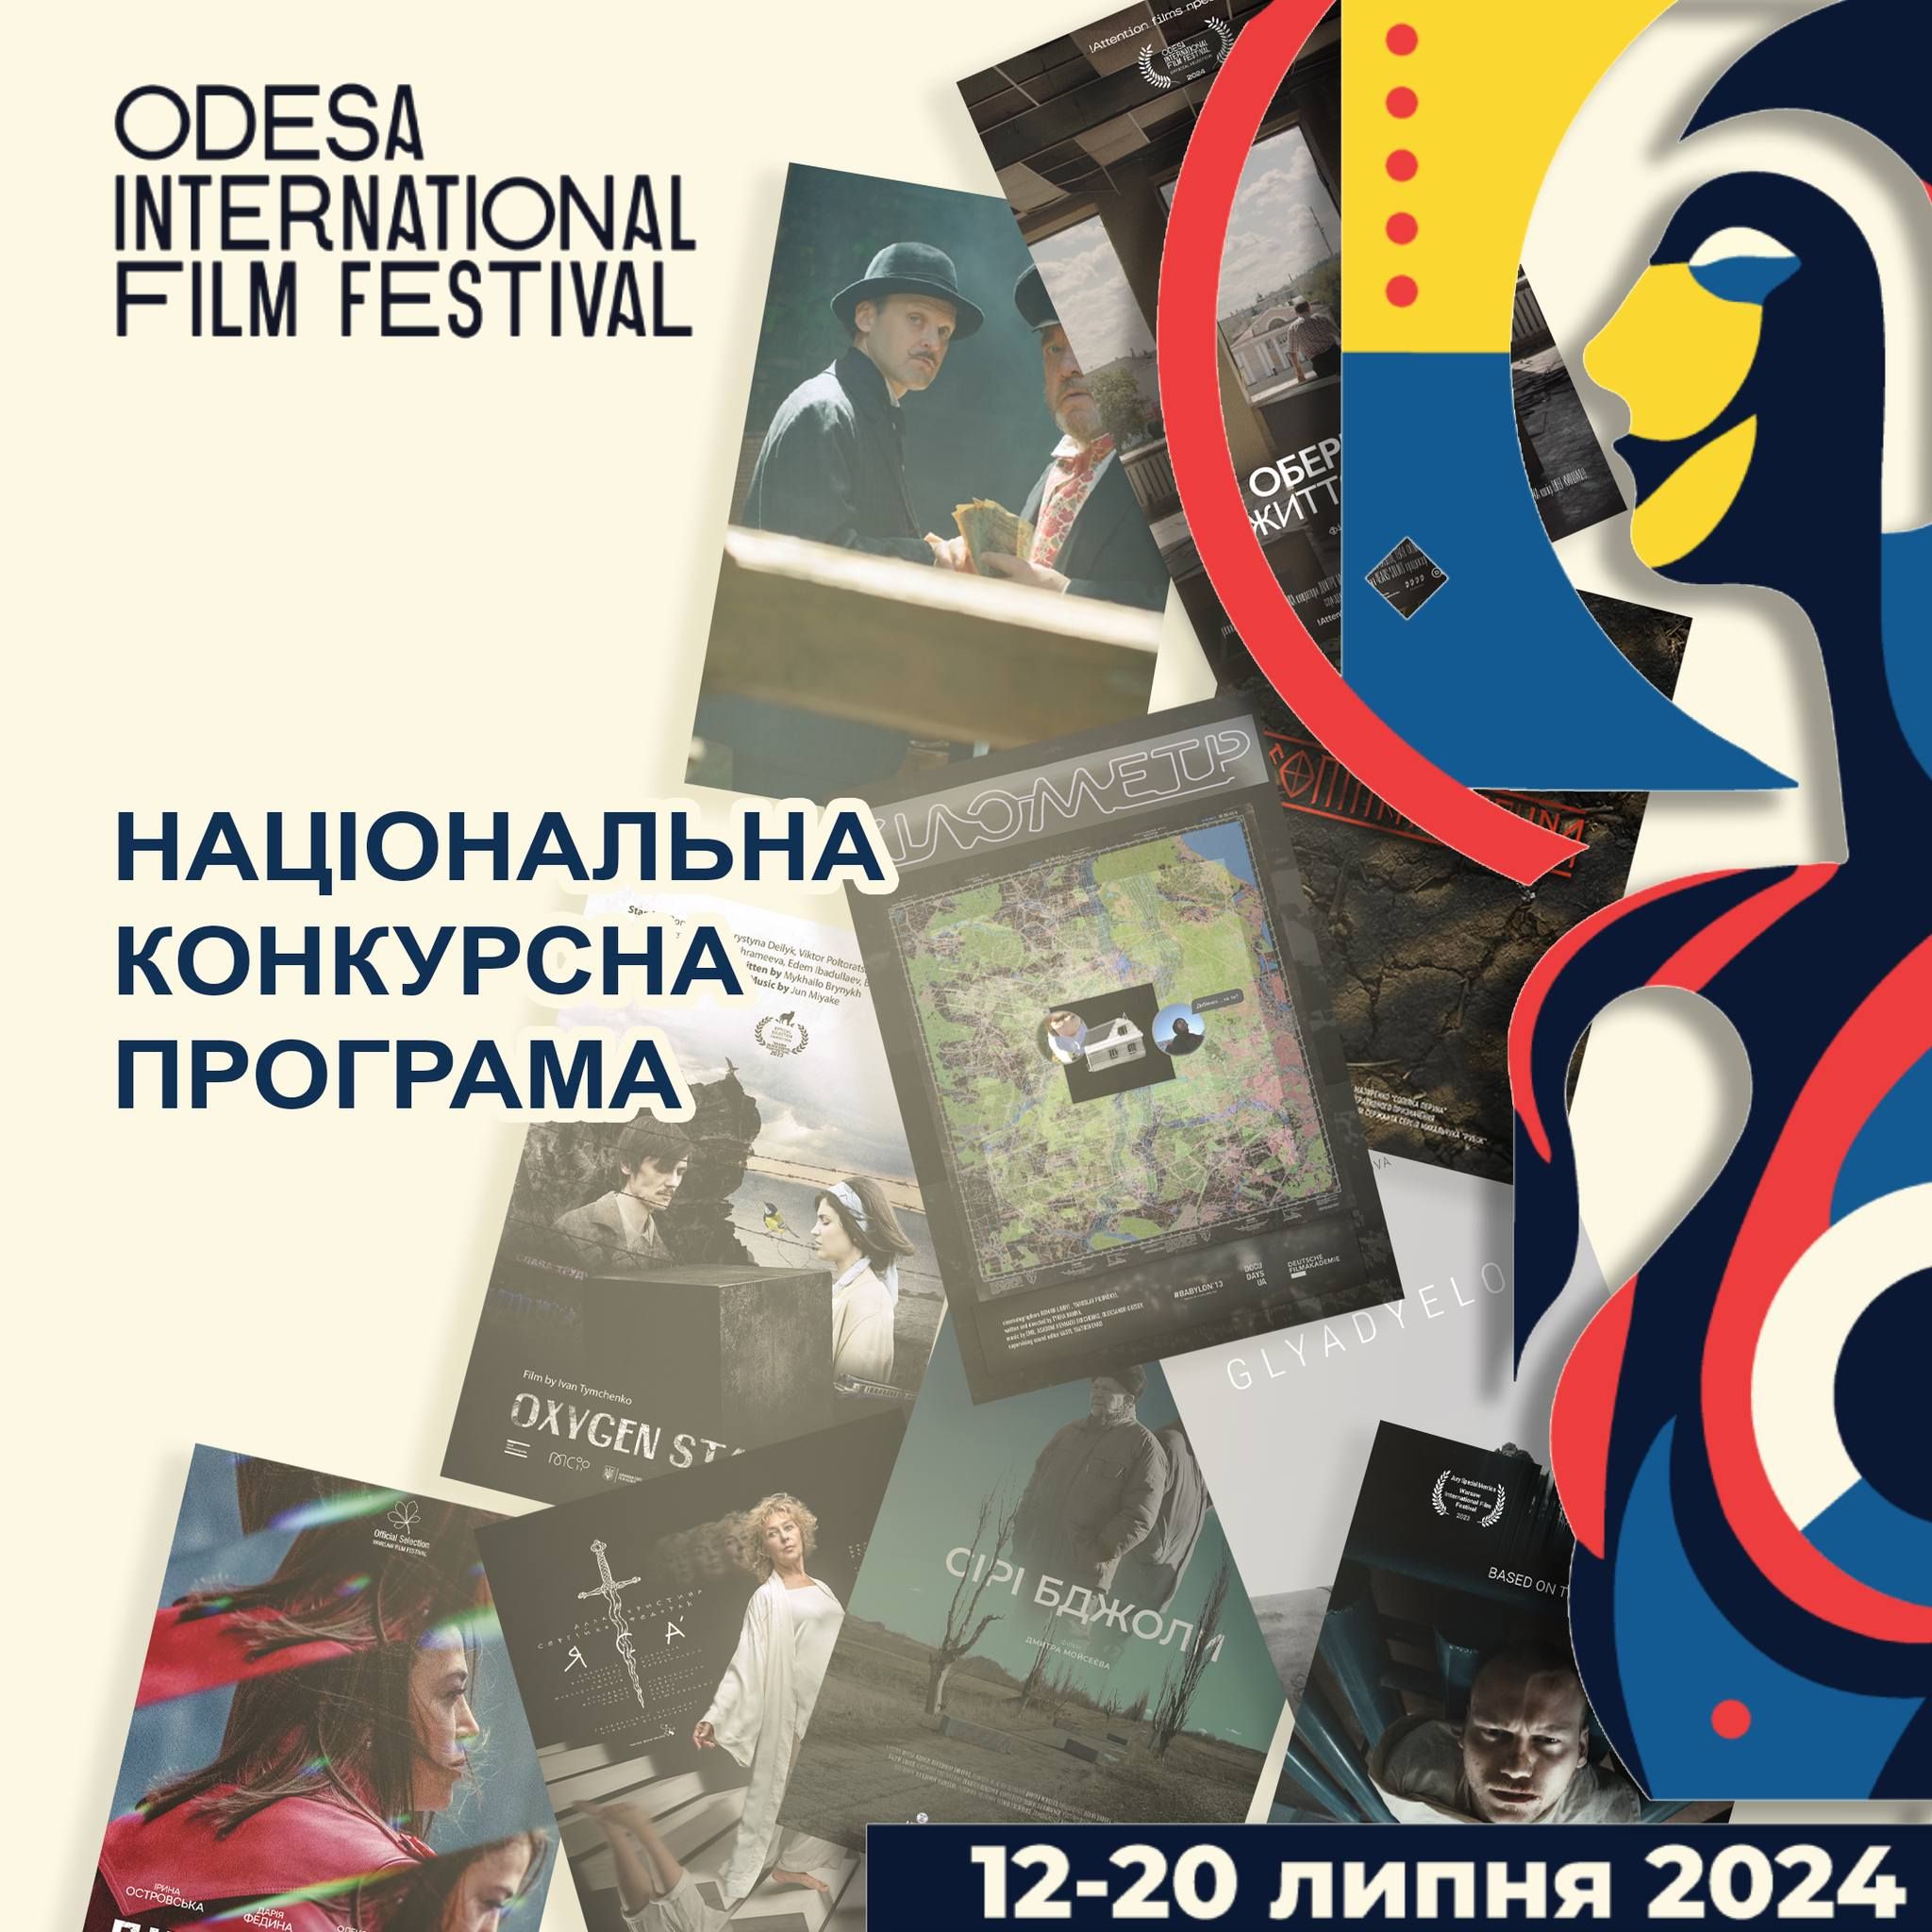 До Національної конкурсної програми 15-го Одеського міжнародного кінофестивалю увійшли 10 повнометражних фільмів.